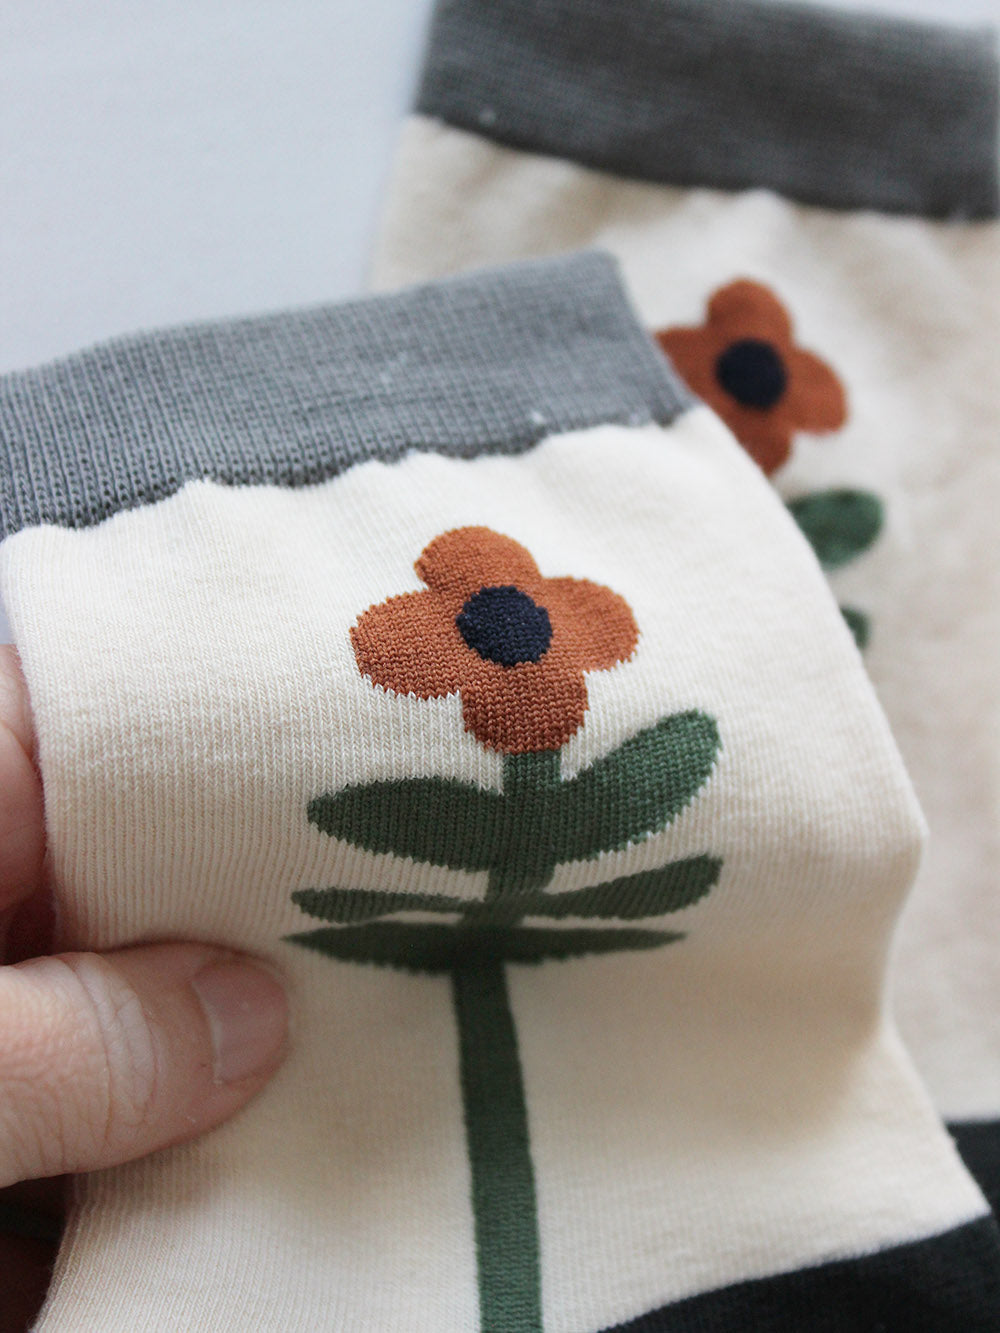 Nahansicht  von weißen Socken mit einer grün-orangenen Blume, die den Fuß entlang rankt und grauem Bündchen